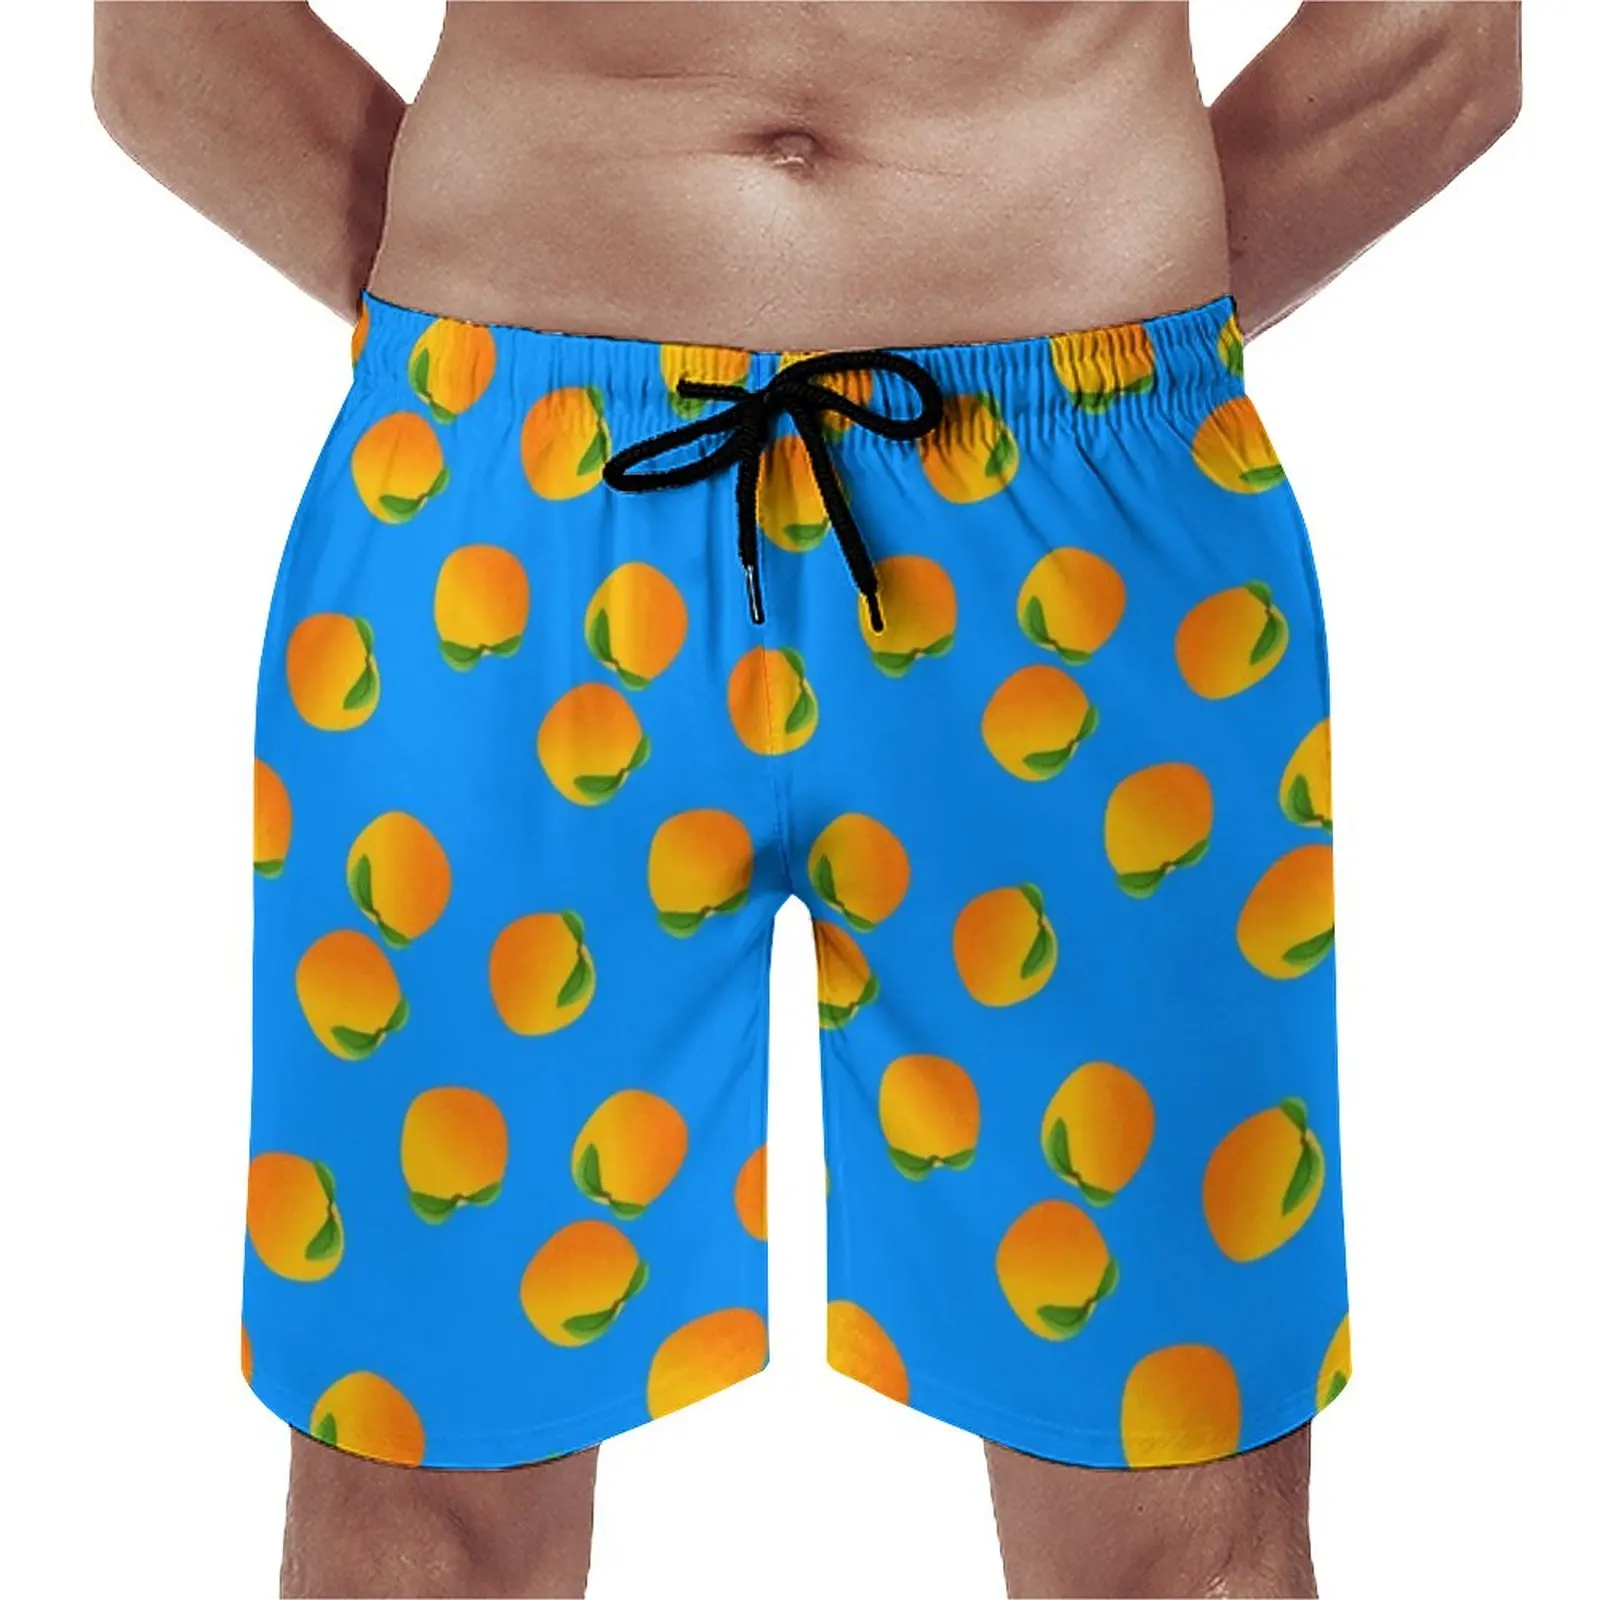 

Летние Пляжные Шорты Яркие апельсины, спортивные шорты для серфинга с принтом фруктов, забавные быстросохнущие плавательные трусы стандарта 3XL